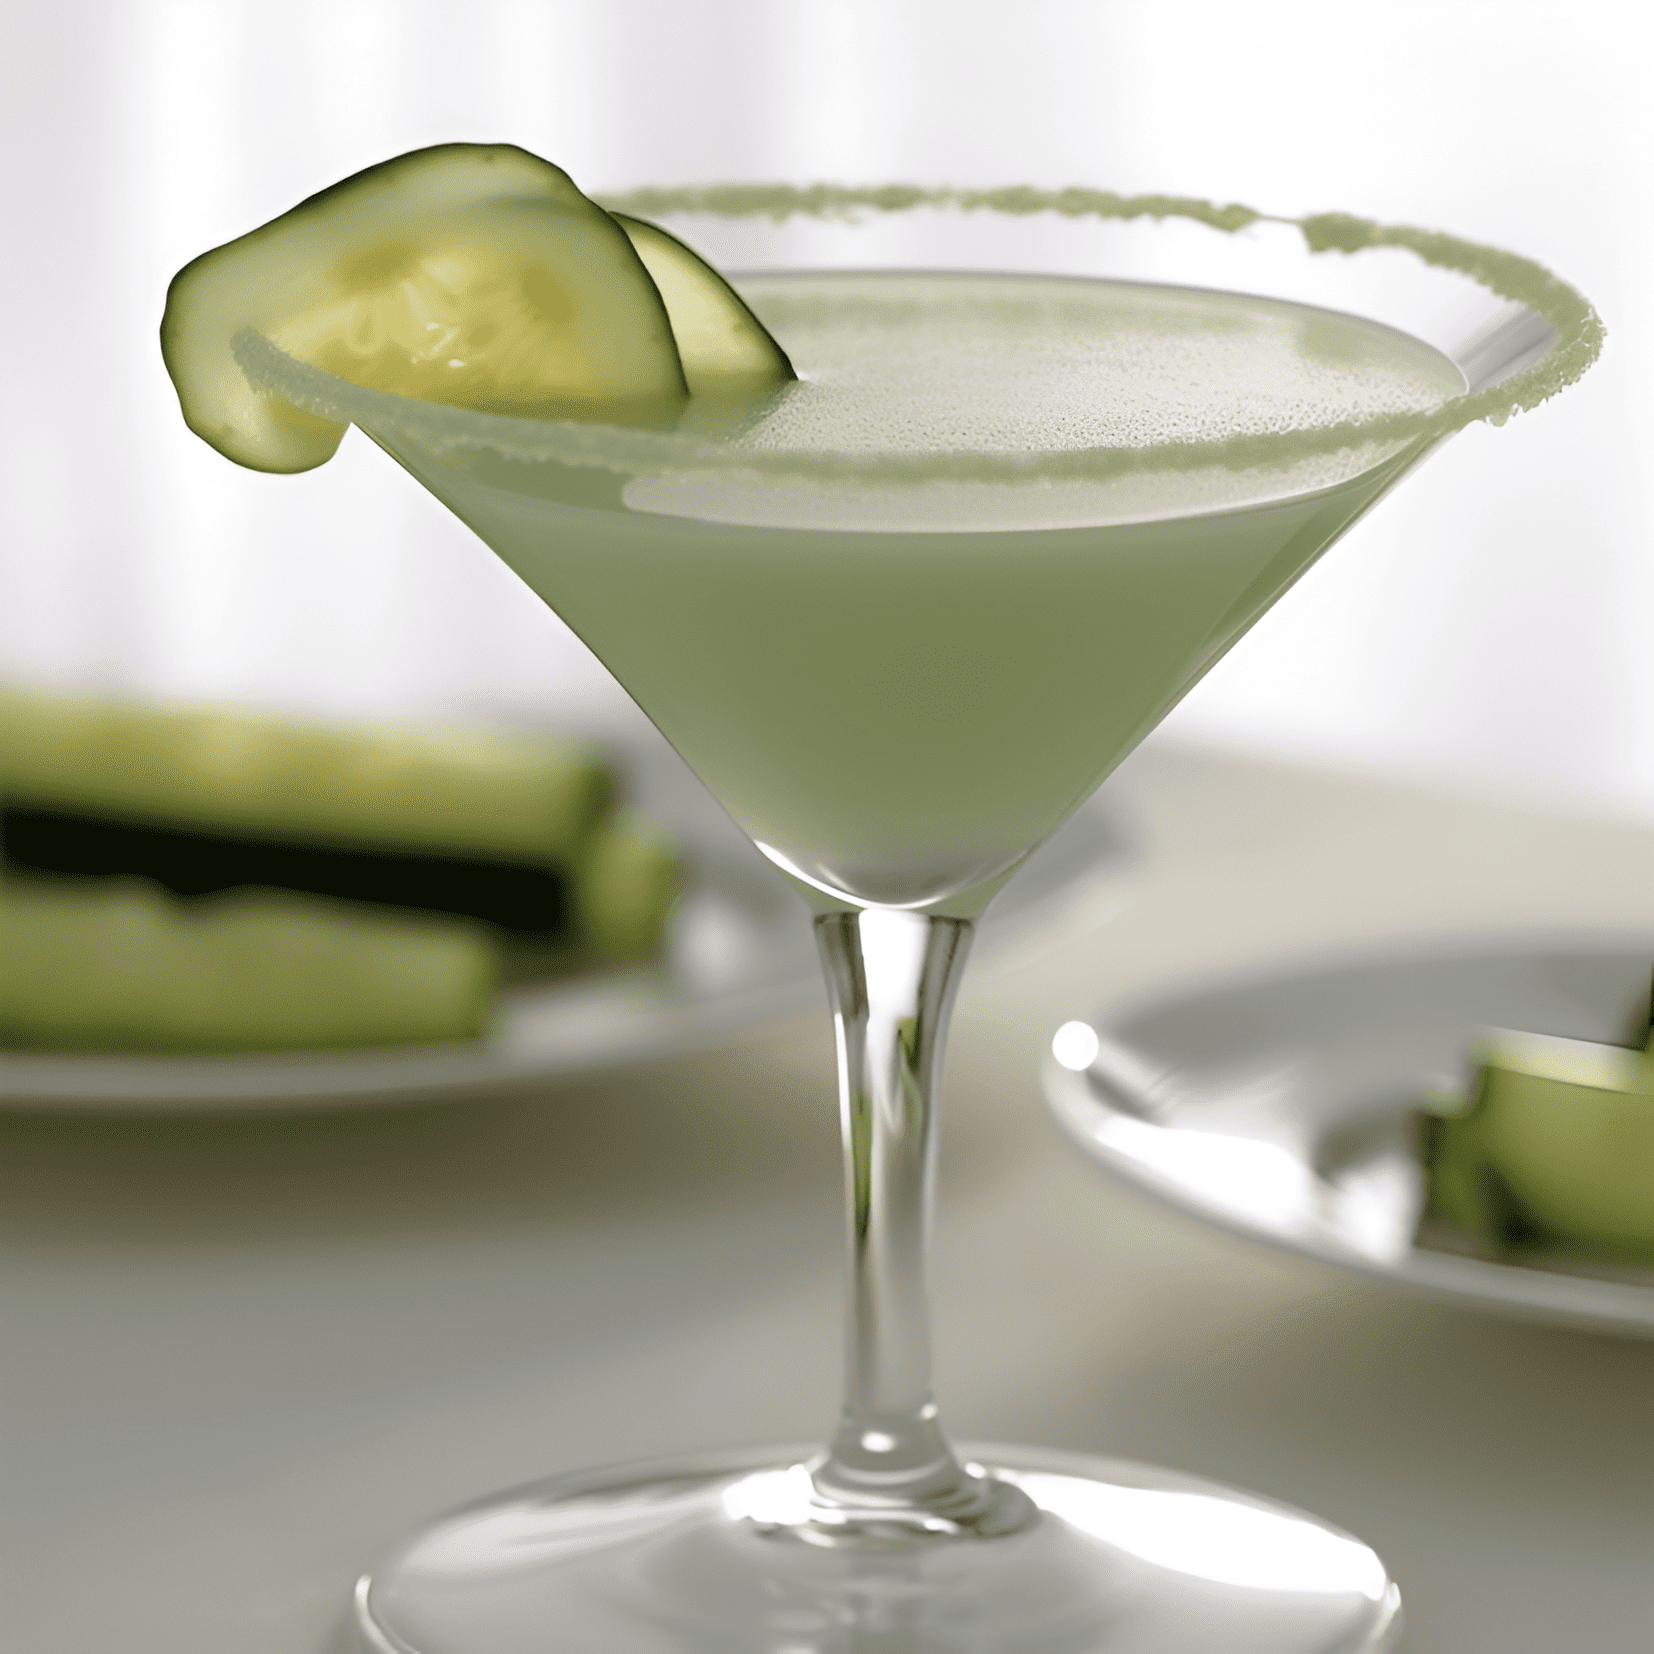 El Cucumber Martini es crujiente, limpio y refrescante con un sutil toque de botánicos. Tiene un sabor ligero y ligeramente dulce con una textura suave y aterciopelada. El pepino agrega un sabor fresco y fresco que equilibra la nitidez del gin y la acidez del limón.